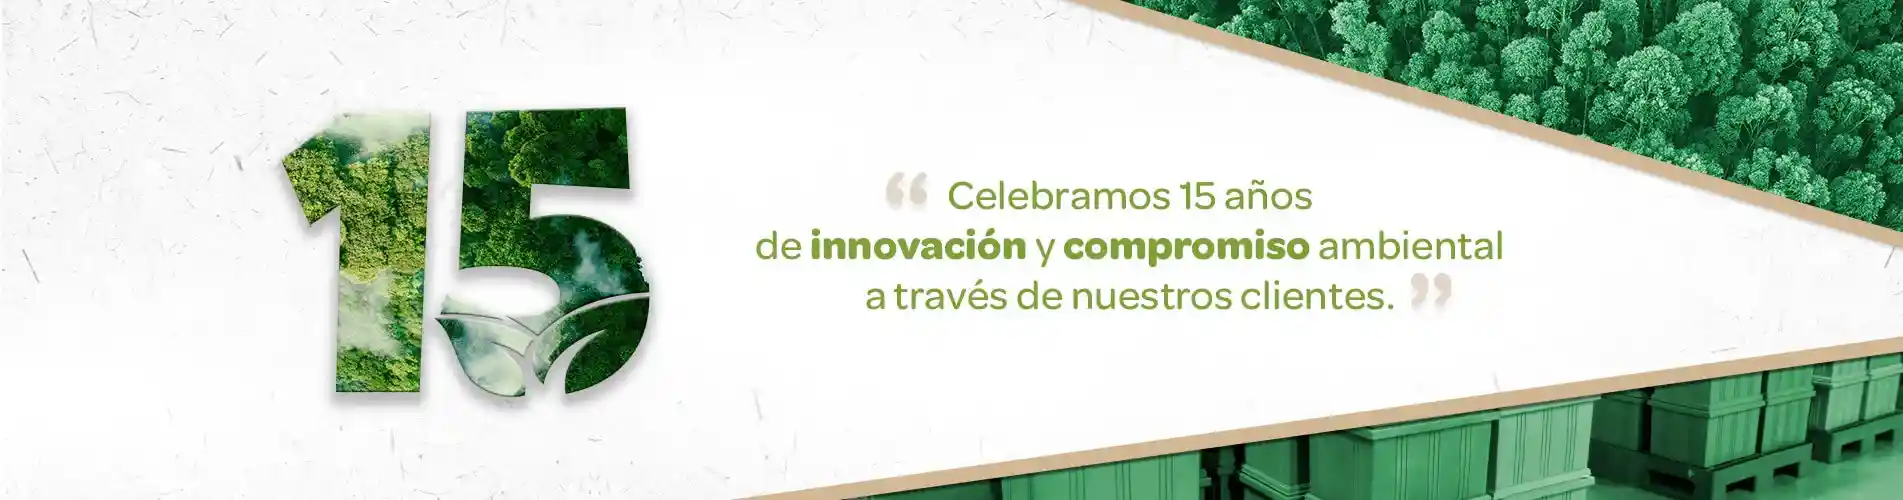 Celebramos 15 años de innovación y compromiso ambiental a través de nuestros clientes.